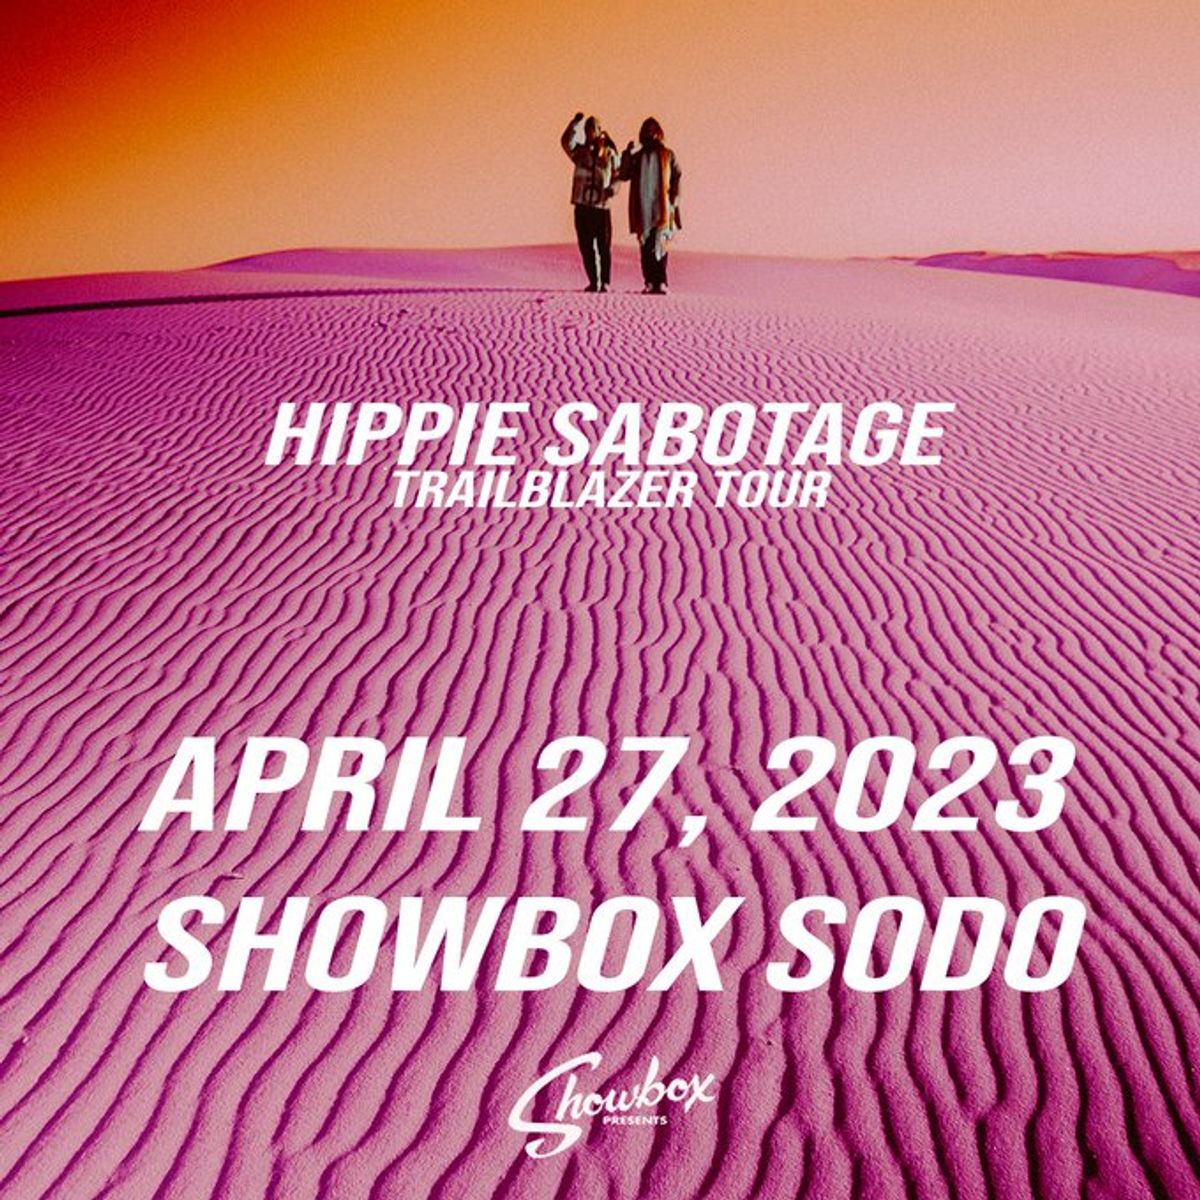 hippie sabotage trailblazer tour song list